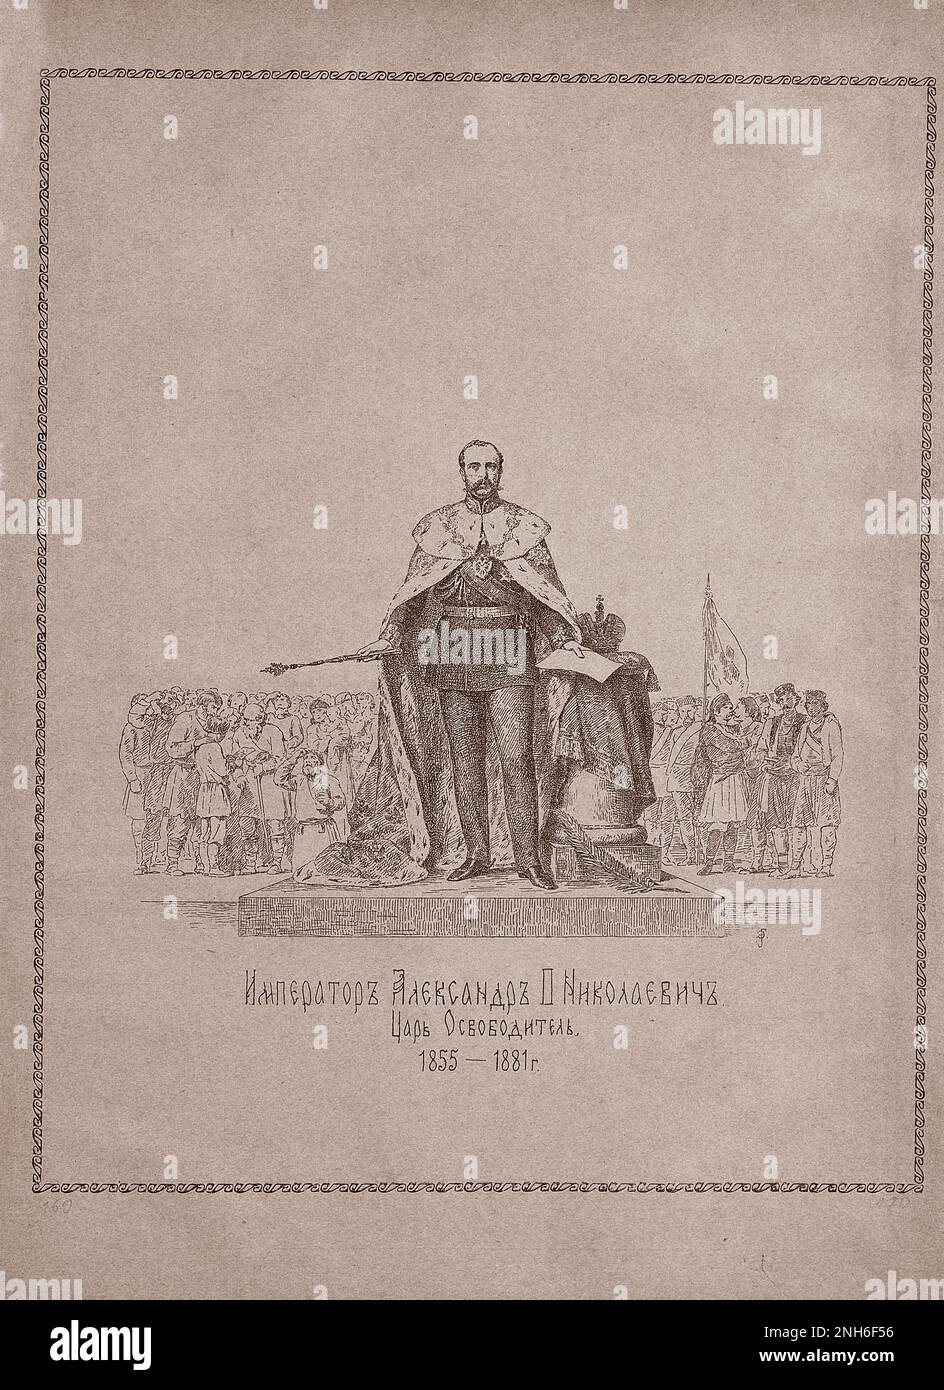 Incisione di Alessandro II di Russia. 1913 Alessandro II (1818–1881) fu imperatore di Russia, re di Polonia e granduca di Finlandia dal 2 marzo 1855 fino al suo assassinio nel 1881. Foto Stock